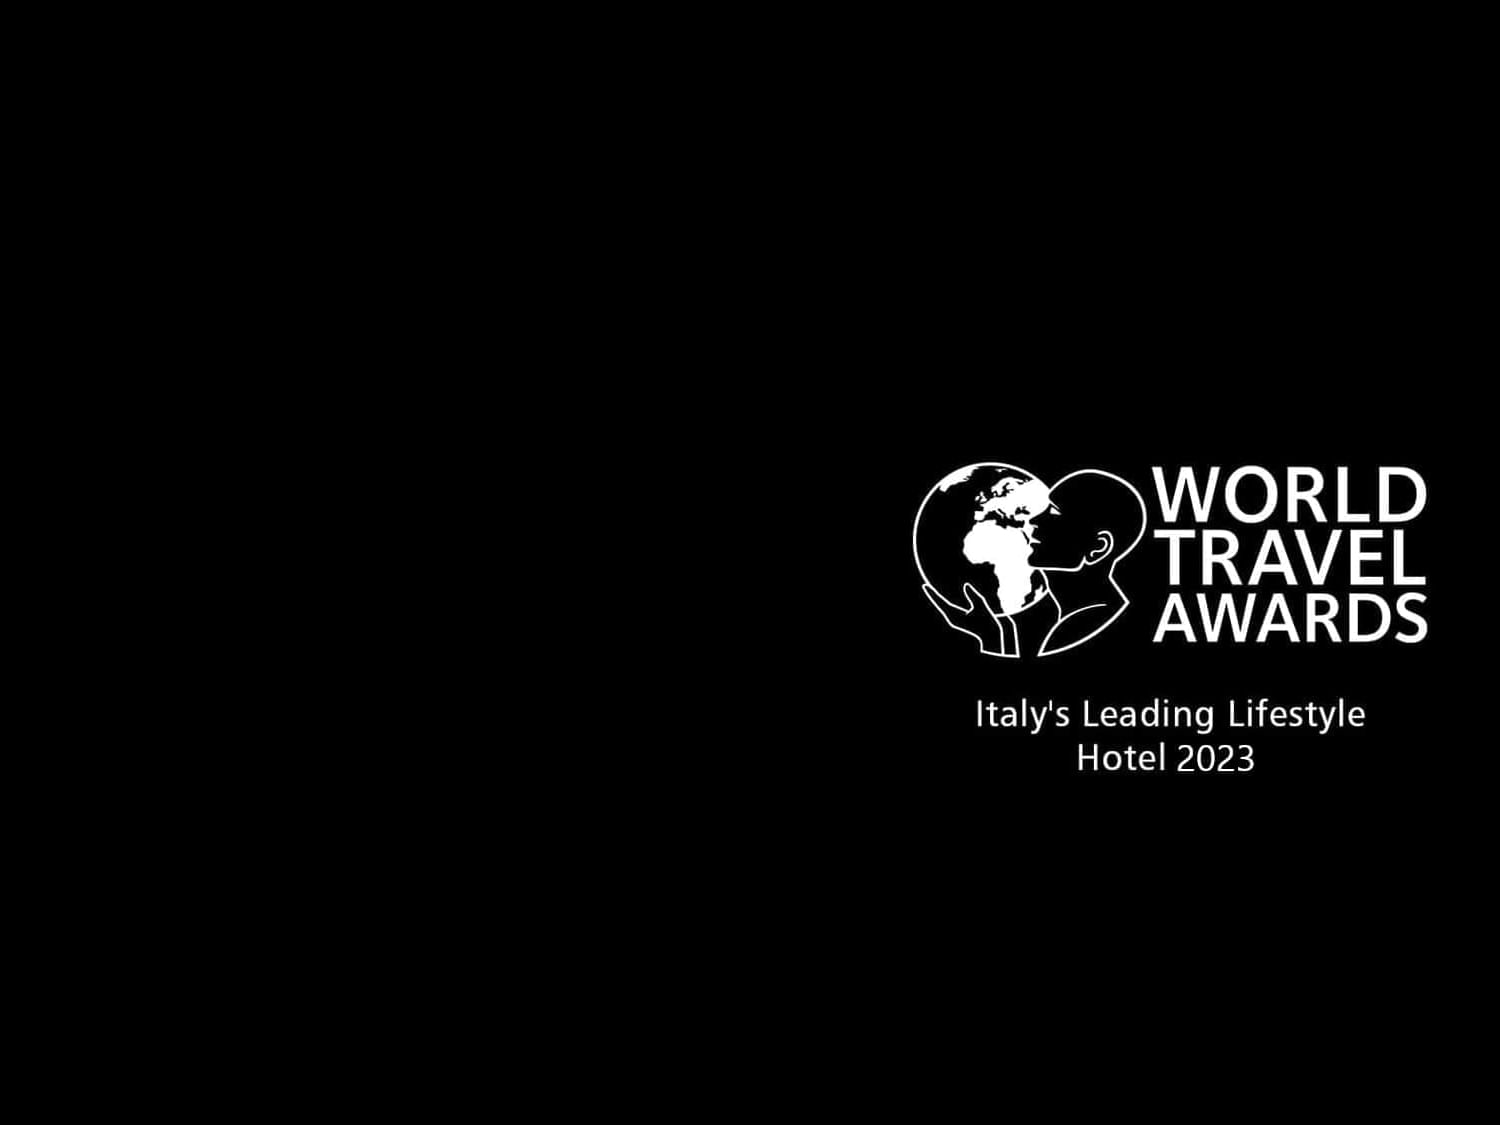 World Travel Awards: Italy’s Leading Lifestyle Hotel 2023